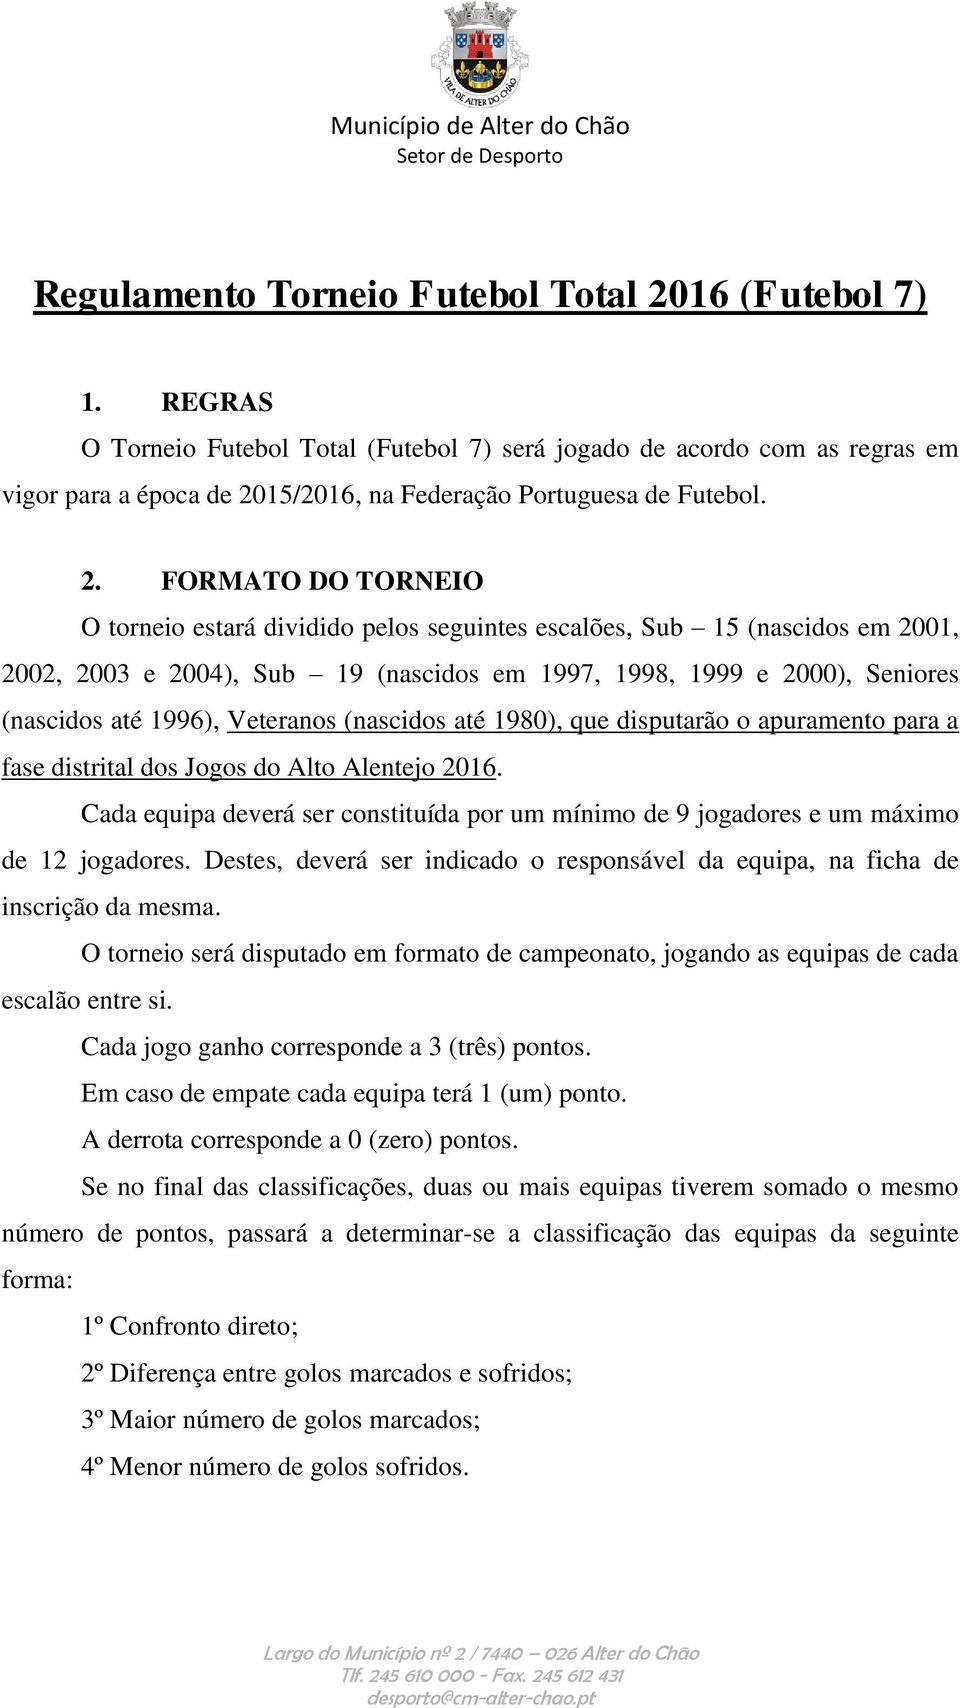 REGULAMENTO DO I TORNEIO DE SUECA TERRAFLOR - PDF Download grátis